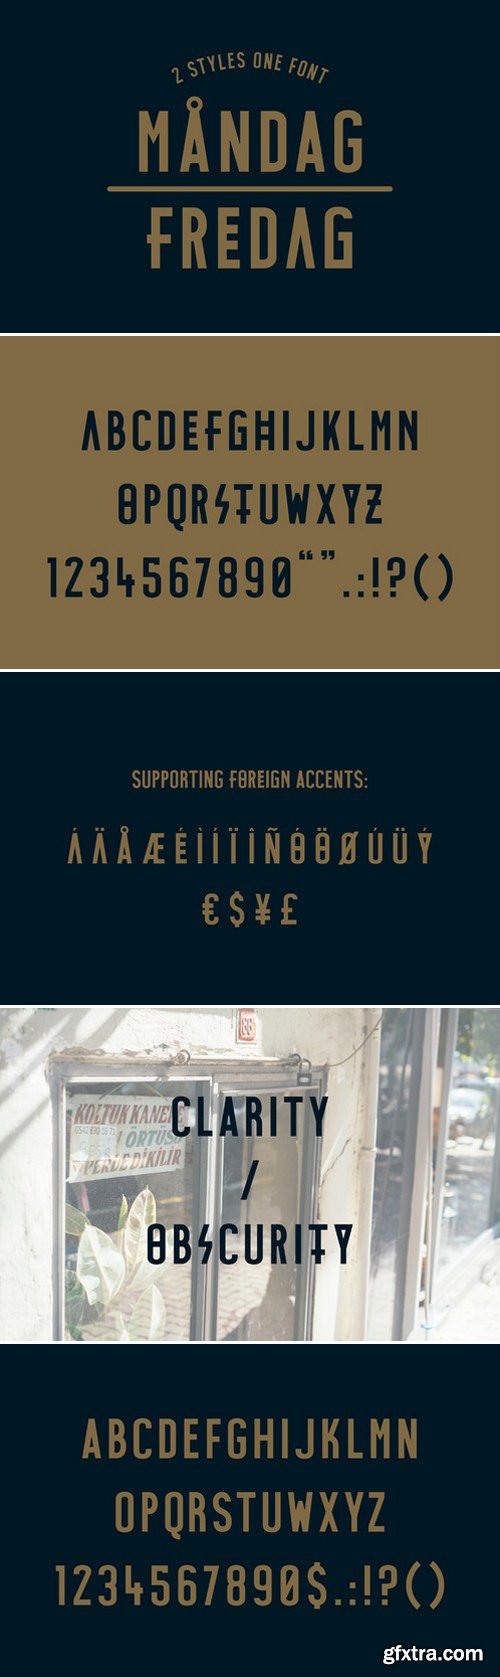 CM - MANDAG - FREDAG Typeface 400953